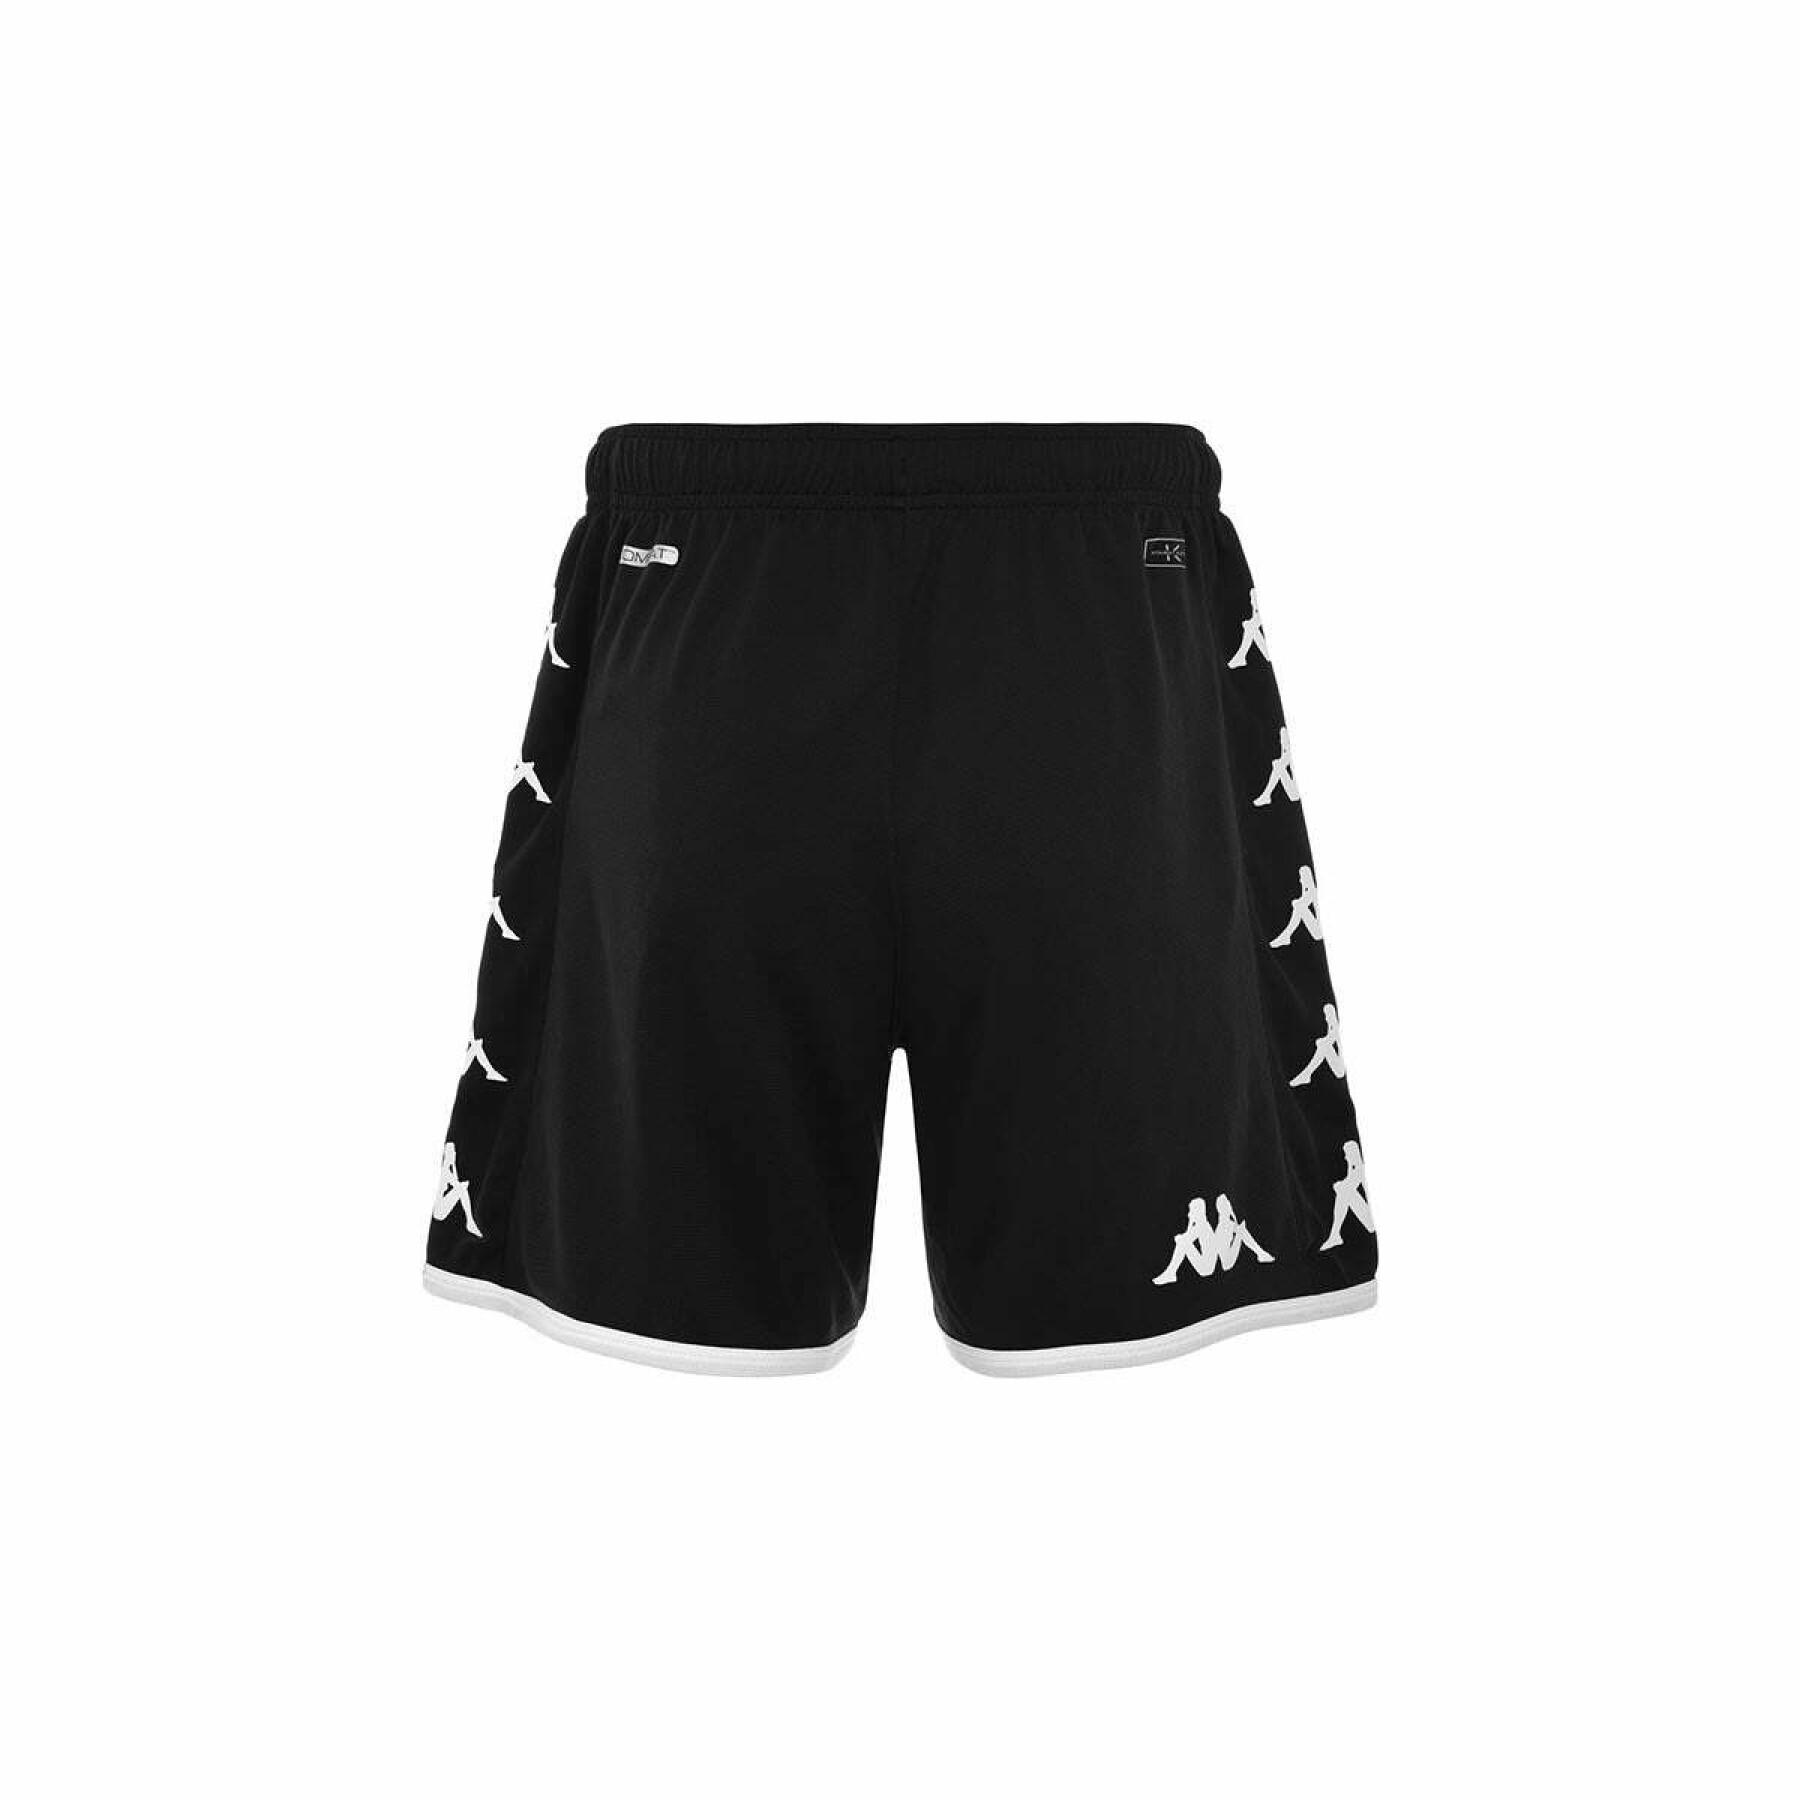 Outdoor shorts AS Monaco 2022/23